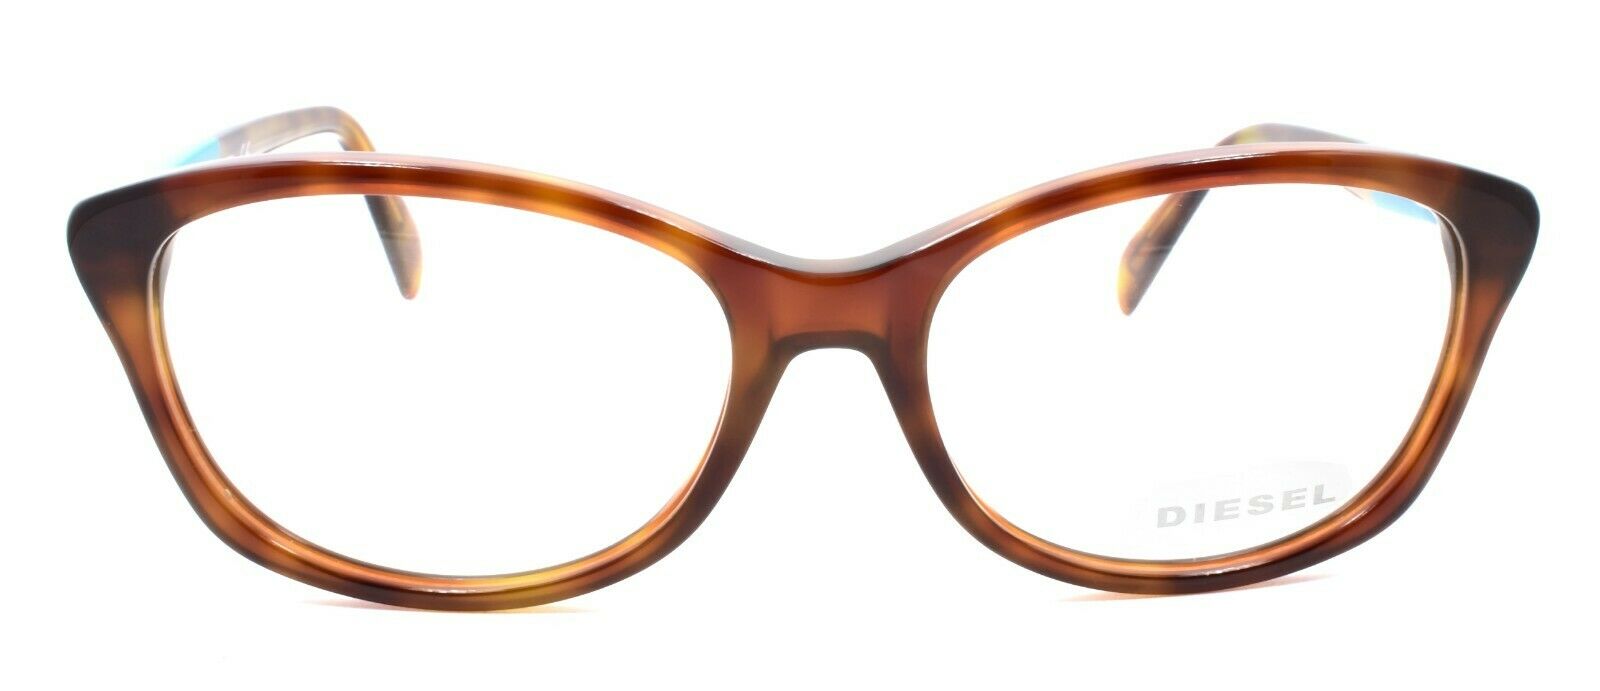 2-Diesel DL5088 052 Women's Eyeglasses Frames 53-16-140 Dark Havana / Teal-664689626014-IKSpecs